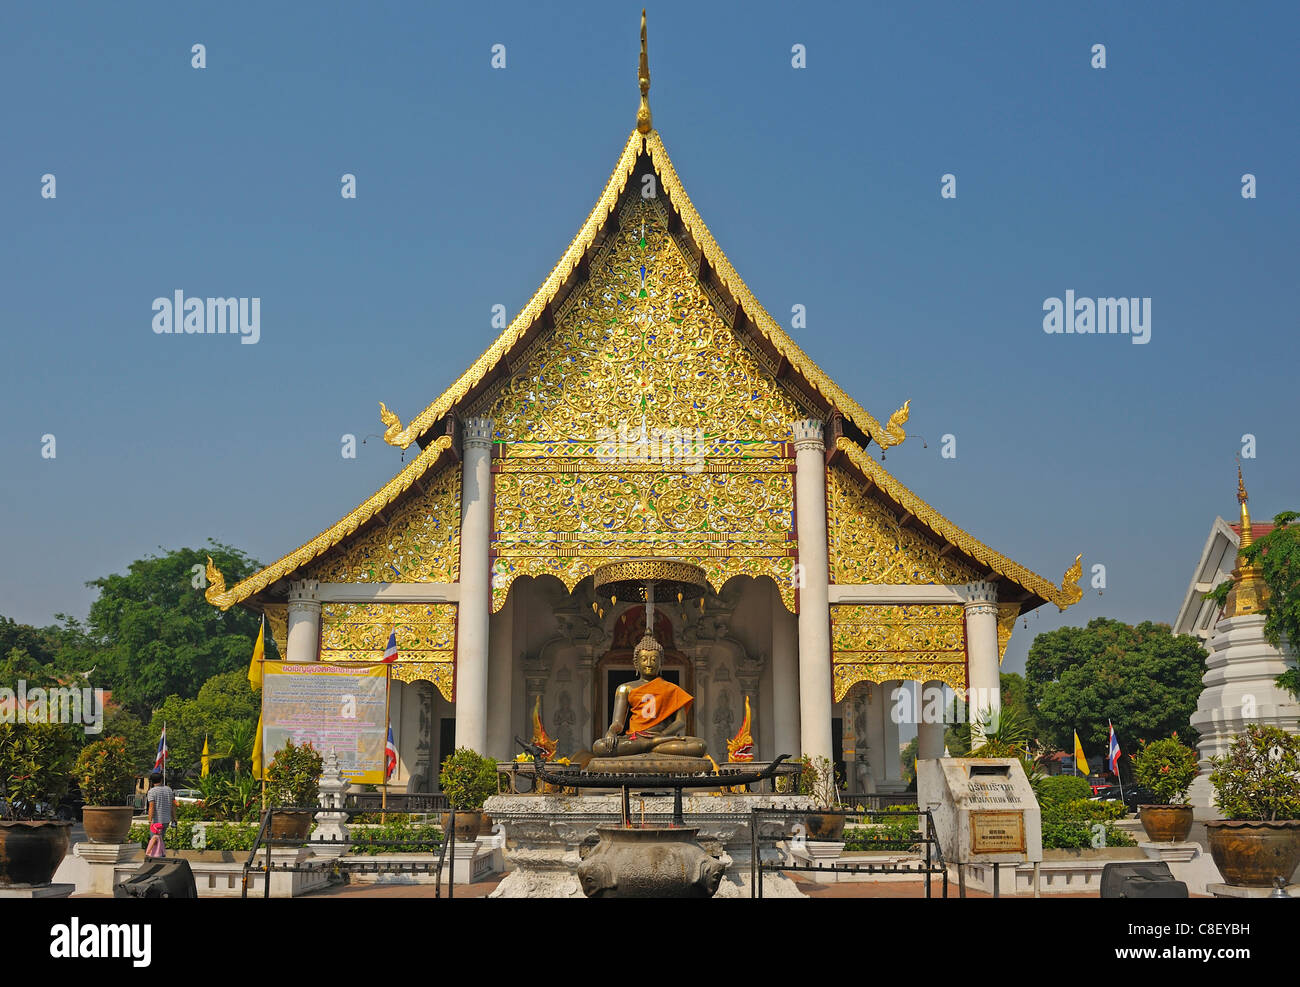 Wat Chedi, Luang, Chiang Mai, Thailand, Asia, Stock Photo